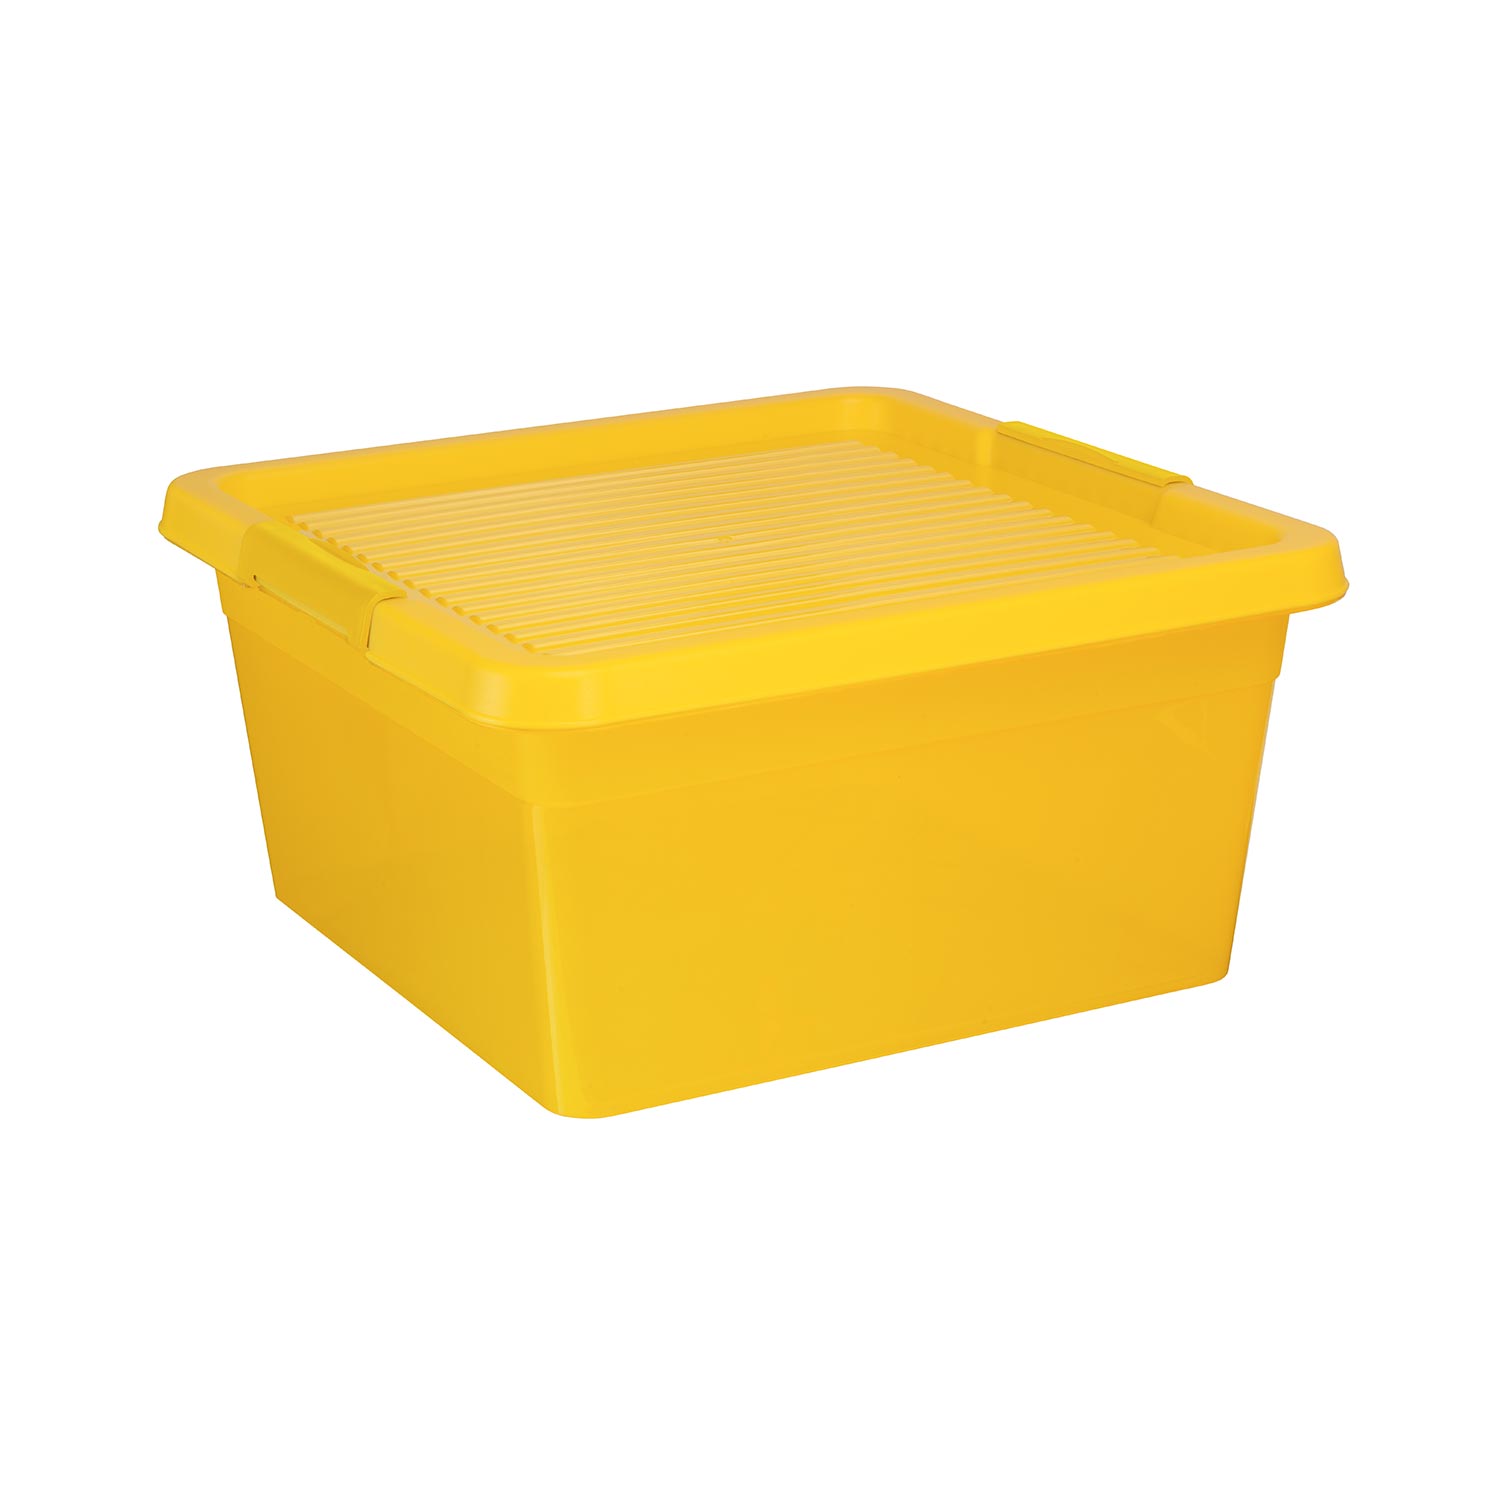 Aufbewahrungsbox "Box One" 20 L in transparenten gelb, Kunststoffbox